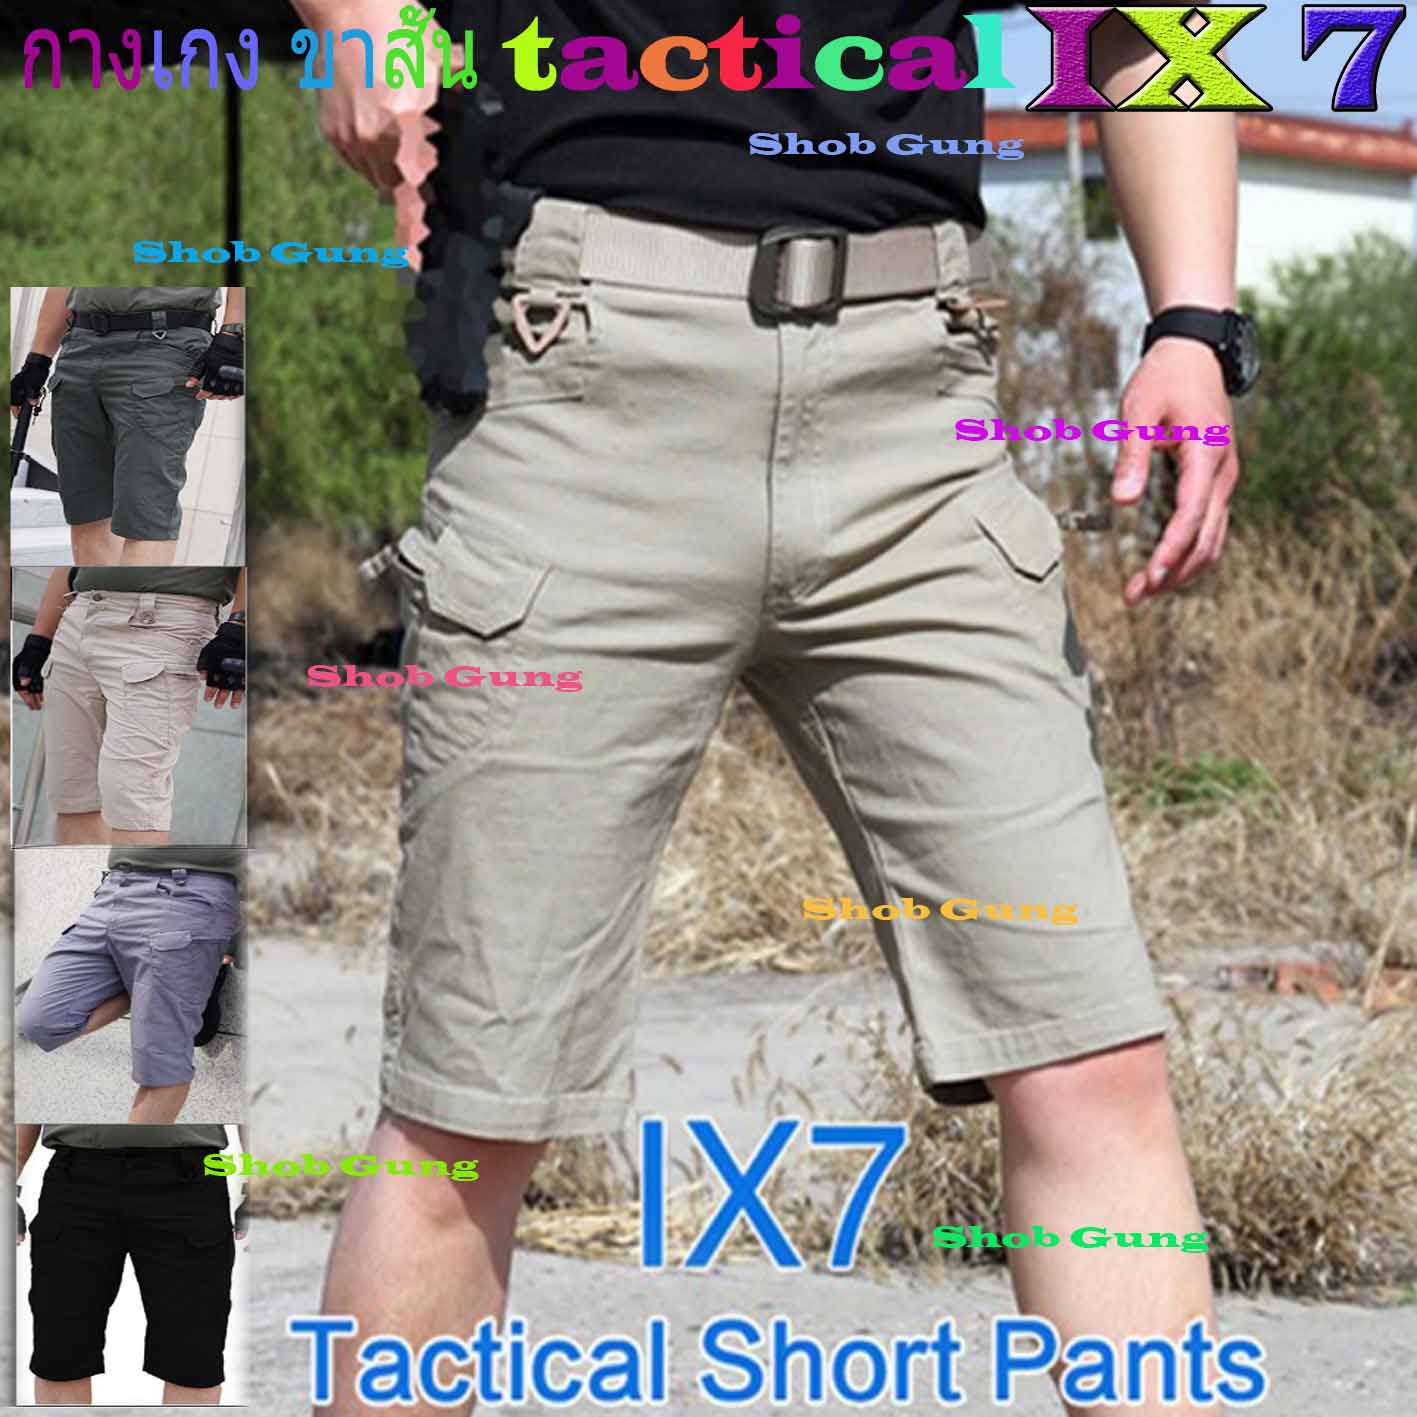 Pants tactical IX7 ขาสั้น กางเกงยุทธวิธี กางเกงคาร์โก้ กางเกงกลางแจ้ง กางเกงเดินป่า กางเกงทหาร กางเกงตำรวจ กันละอองนำ้ มีน้ำหนักเบาใส่สบาย